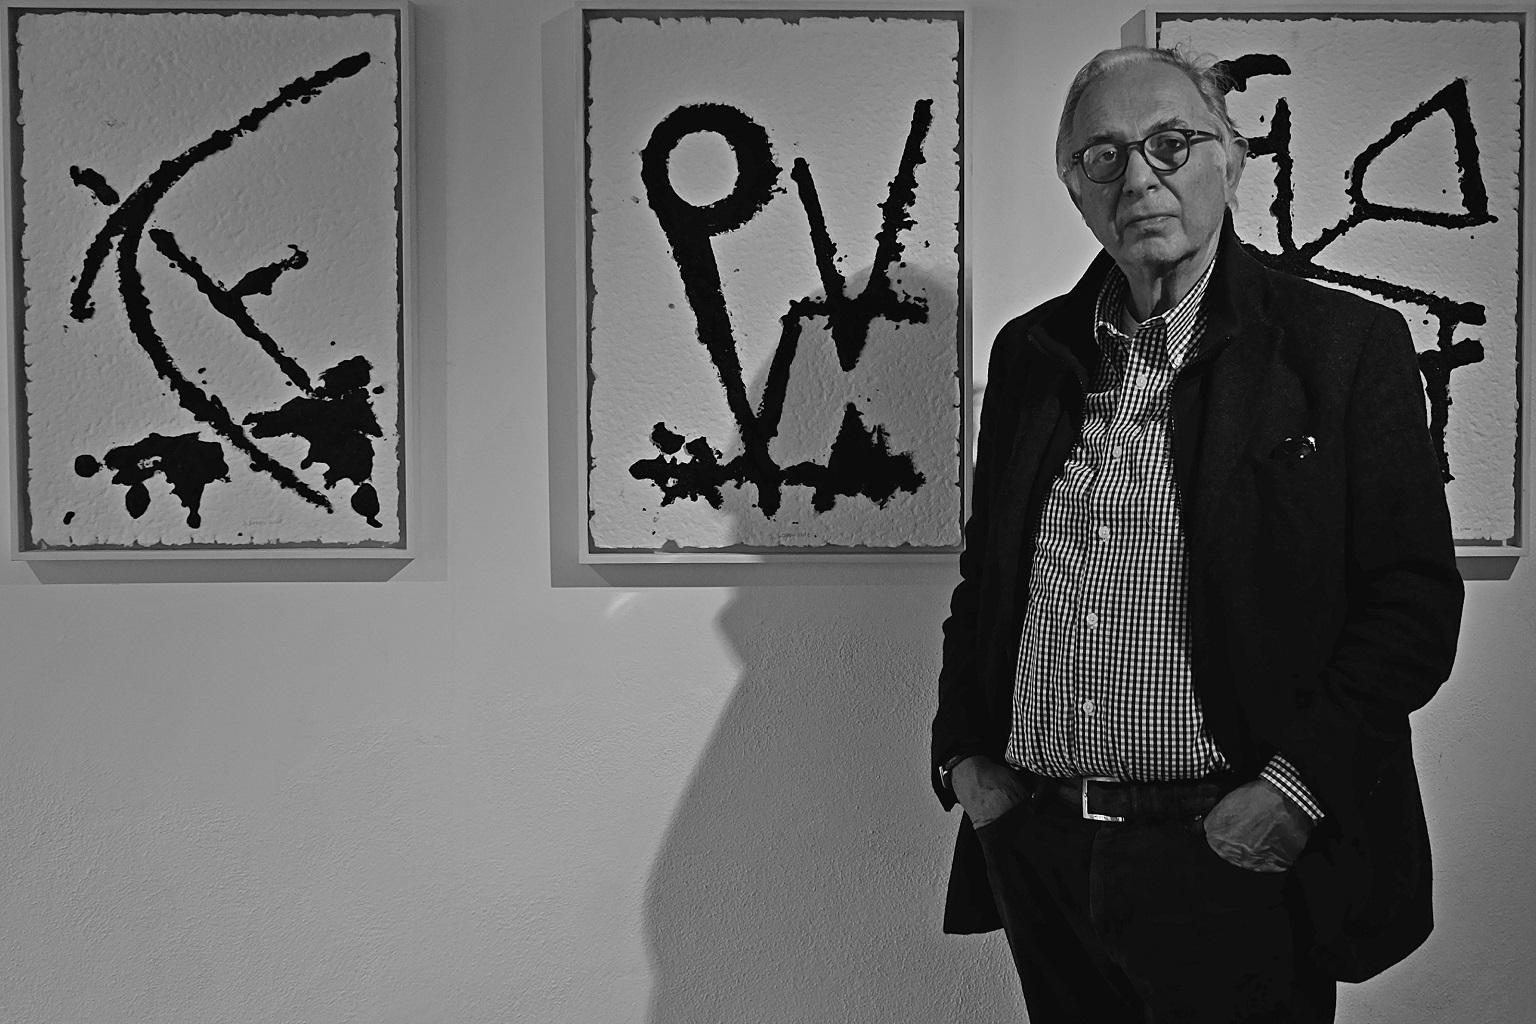 Ausstellung von Stefano Soddu in Mailand: „Geometries of iron“, Vorschläge, die von Sardinien sprechen, „das Land in meiner DNA“